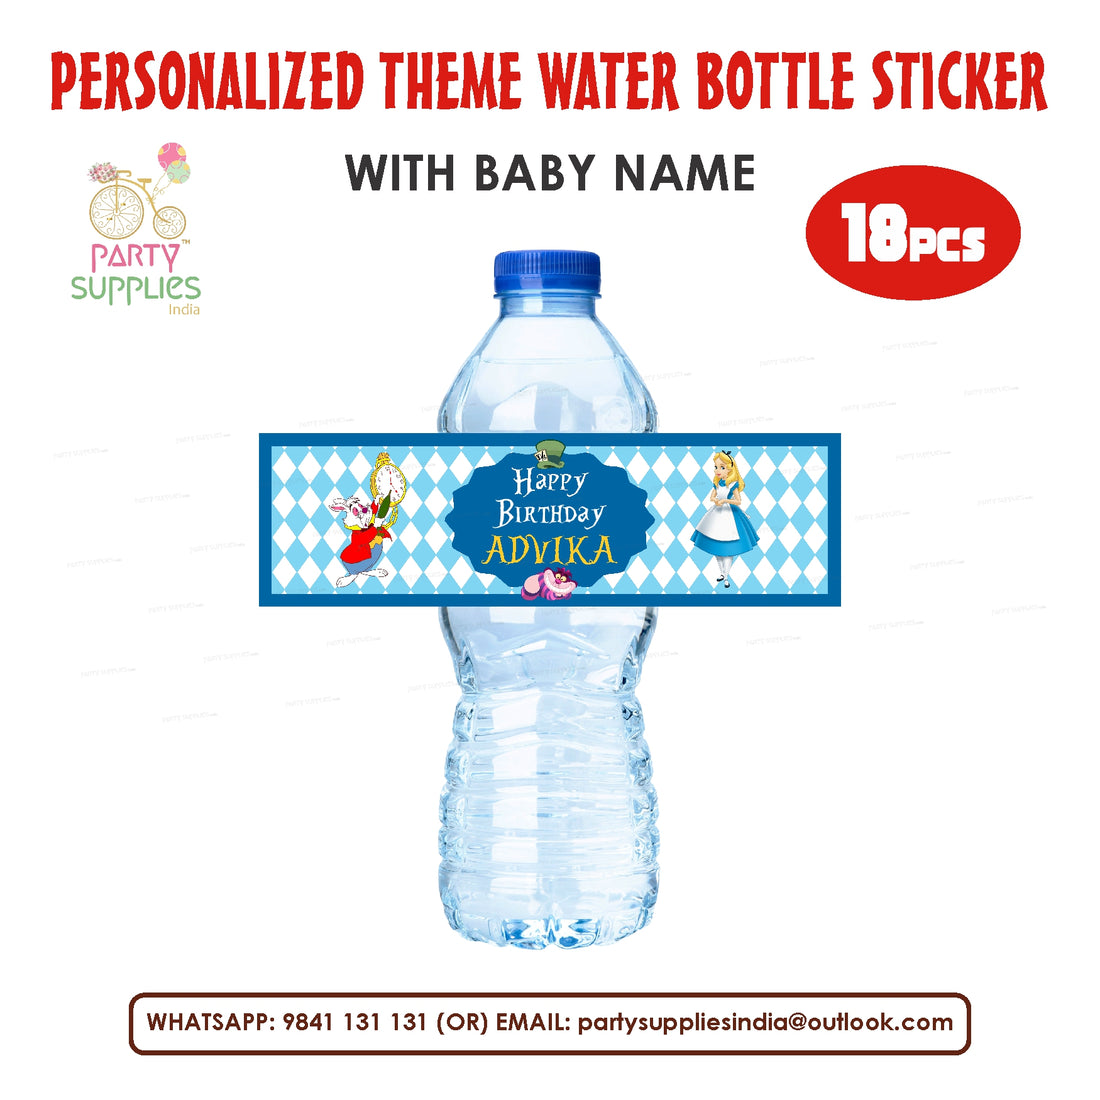 PSI Alice in Wonderland Theme Water Bottle Sticker